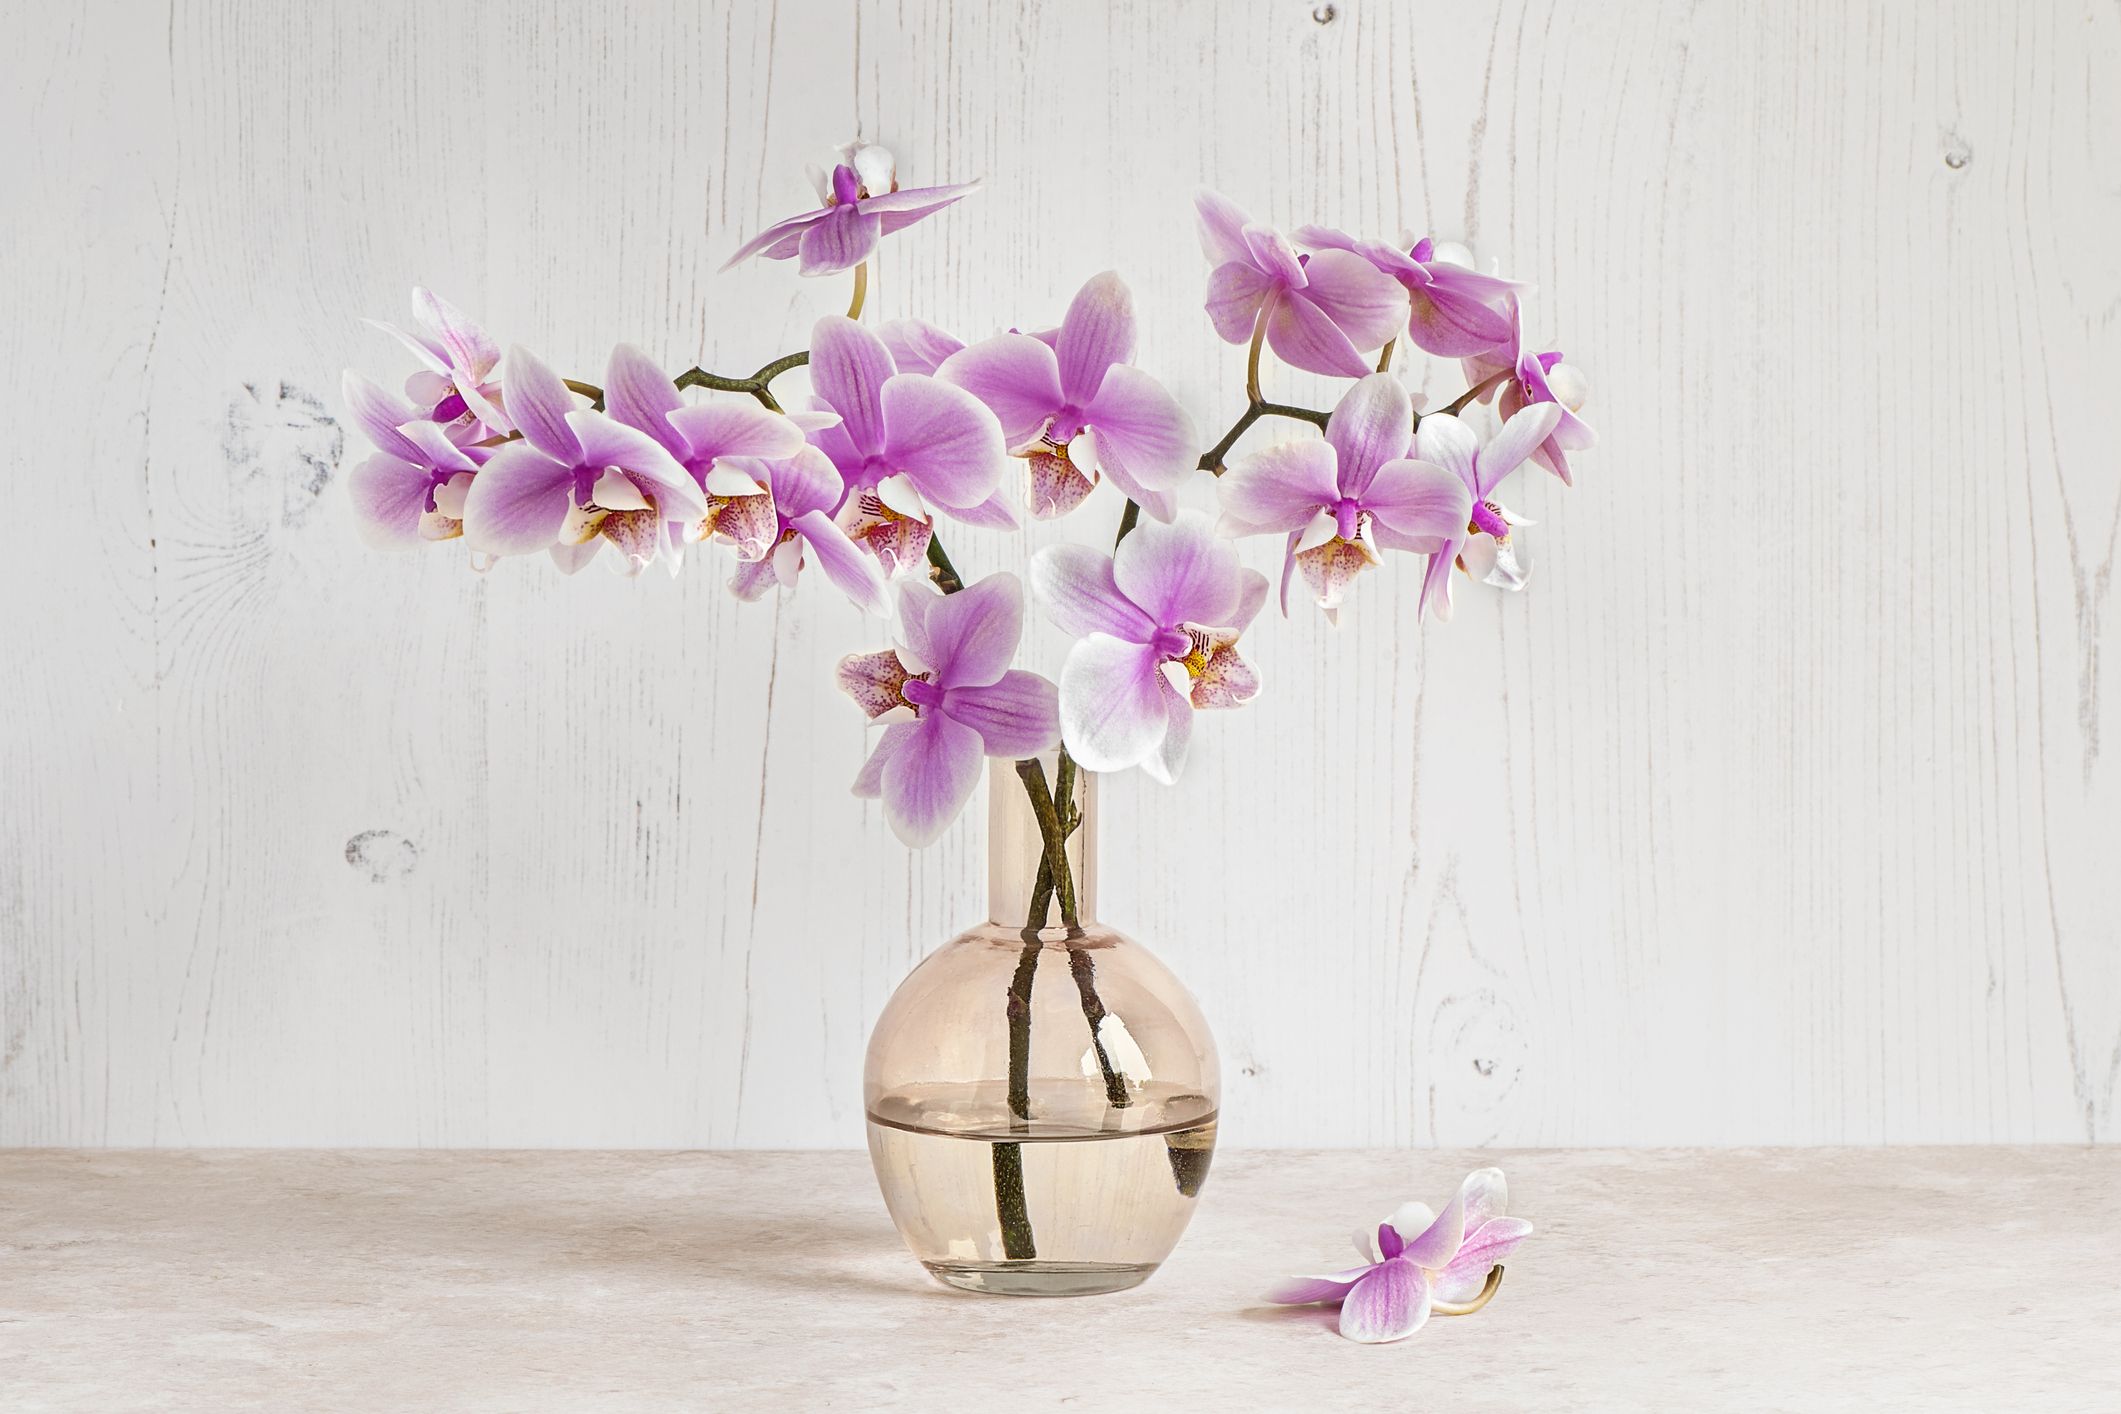 11 Unique Vases to Show Off Your Indoor Blooms